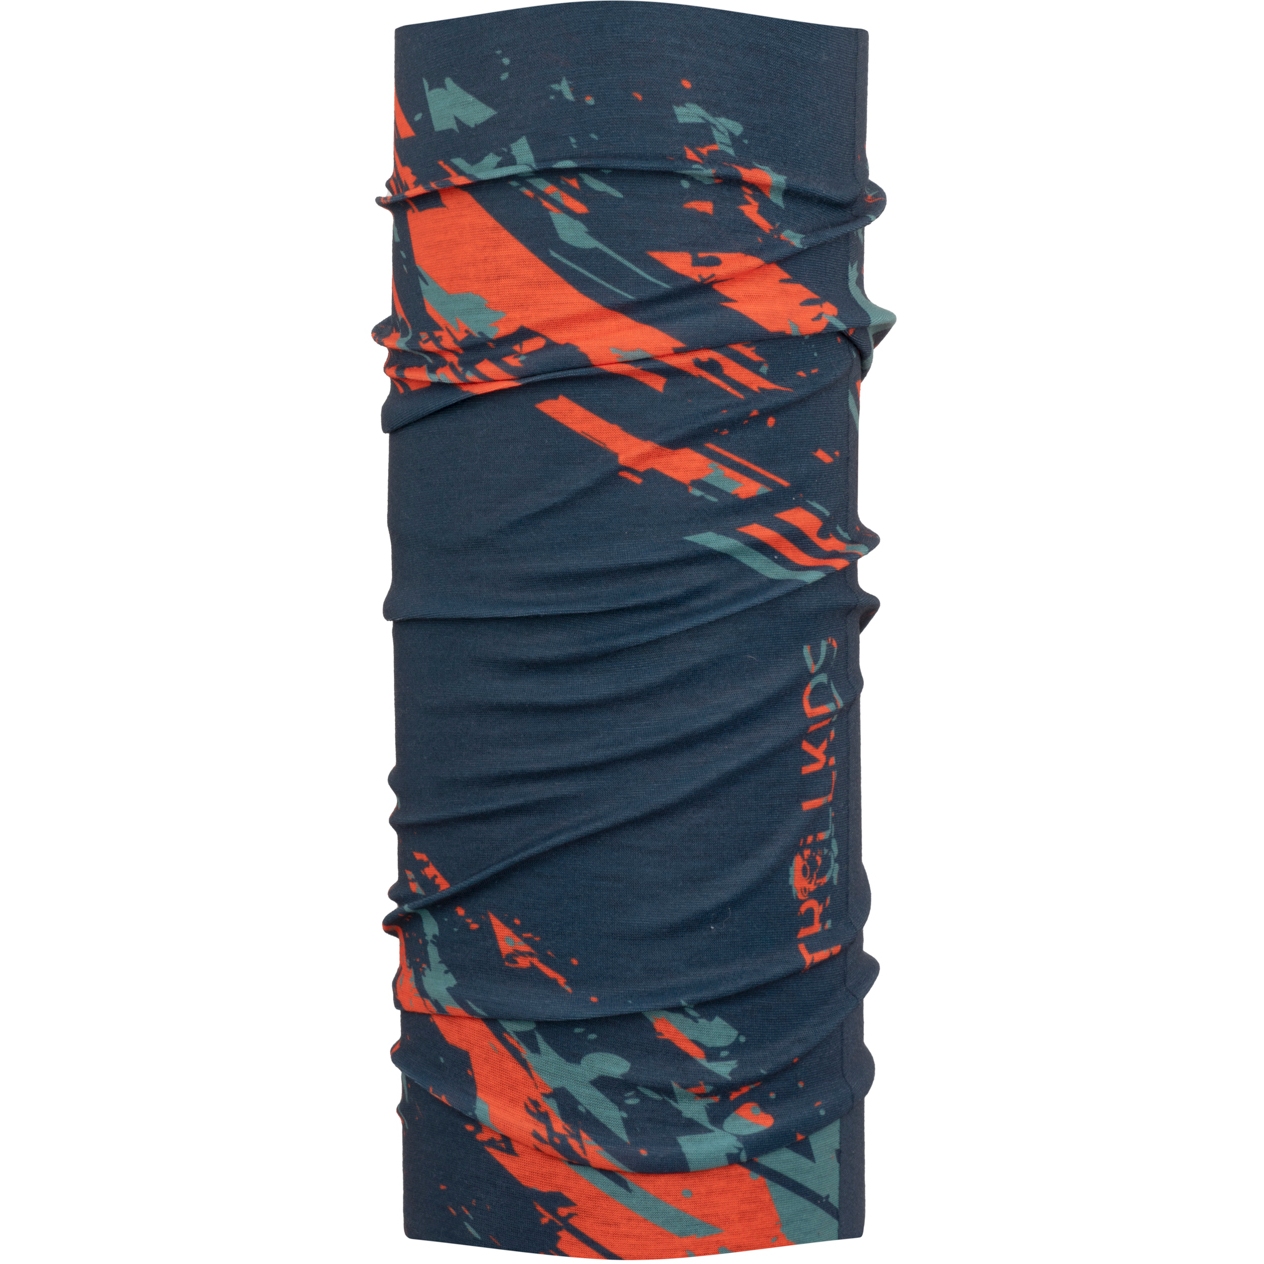 Produktbild von Trollkids Northern Lights Multifunktionstuch Kinder - dusky turquoise/dark navy/glow orange